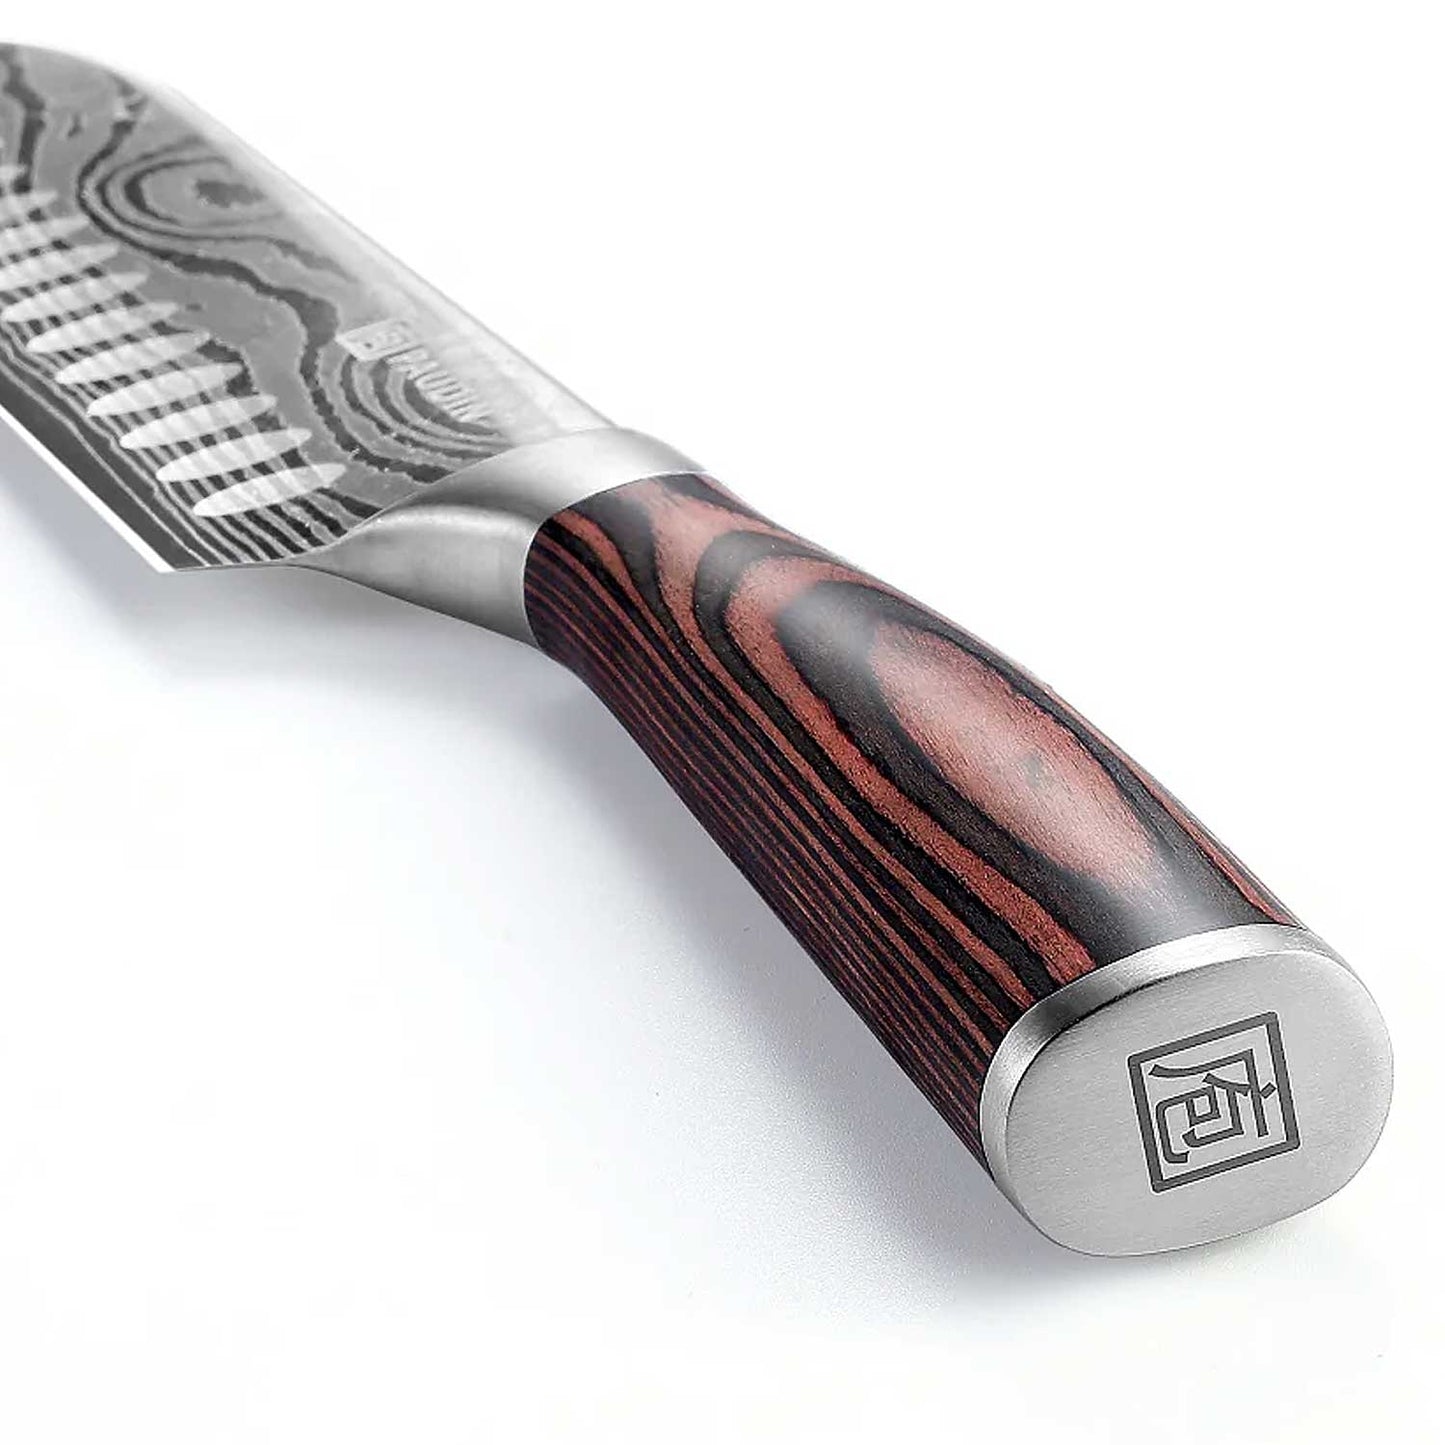 El mango ergonómico en madera pakka ofrece un agarre cómodo y seguro, permitiendo un control óptimo sobre el cuchillo durante el proceso de corte en la parrilla.